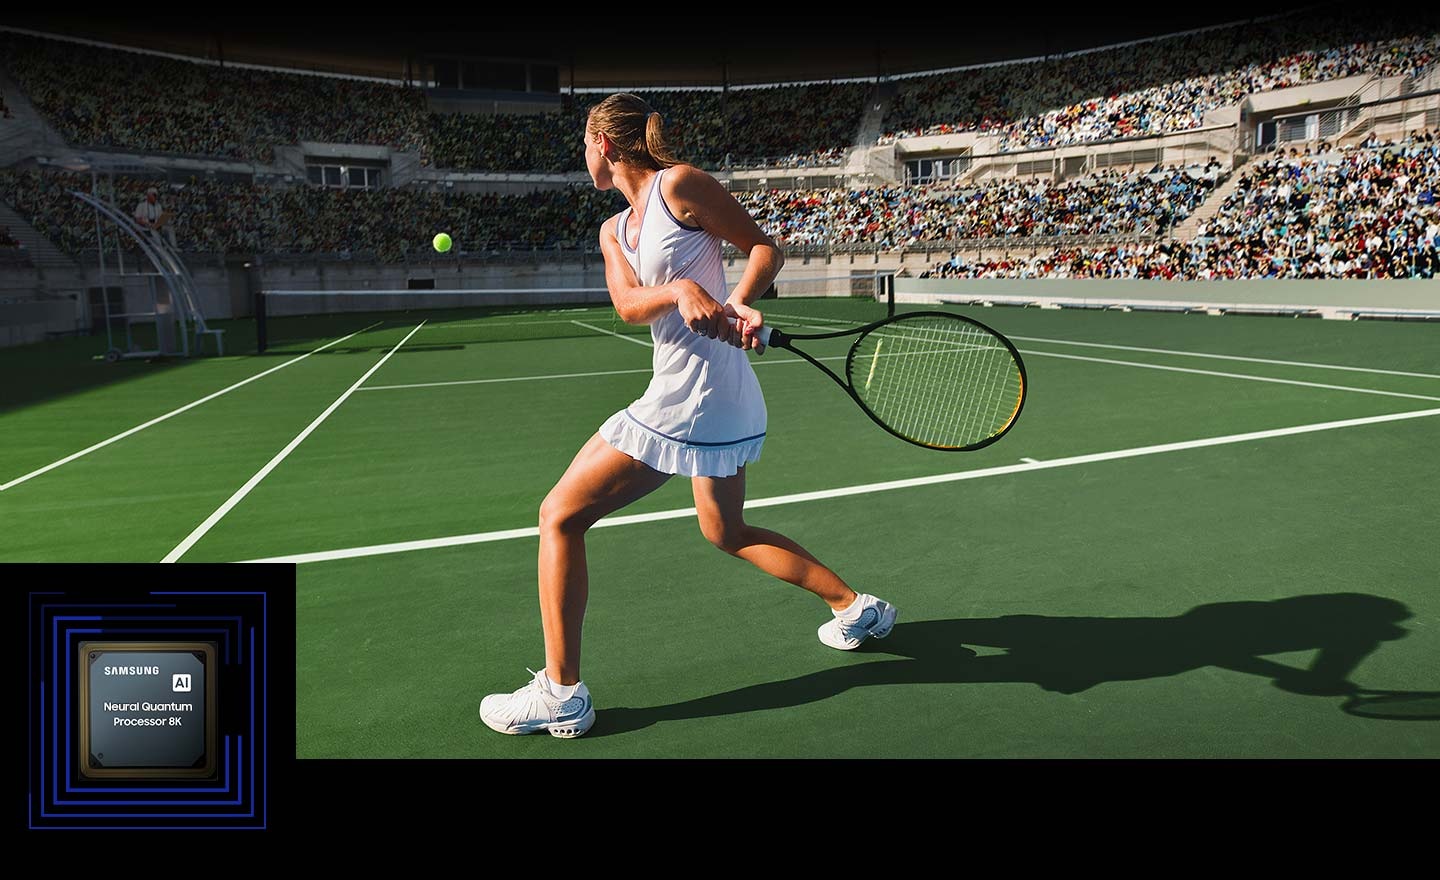 Une femme joue au tennis devant une foule nombreuse. Le Neural Quantum Processor 8K traite les nombreux objets affichés et améliore l’ensemble de la scène. Le Neural Quantum Processor 8K est exposé dans le coin inférieur gauche.